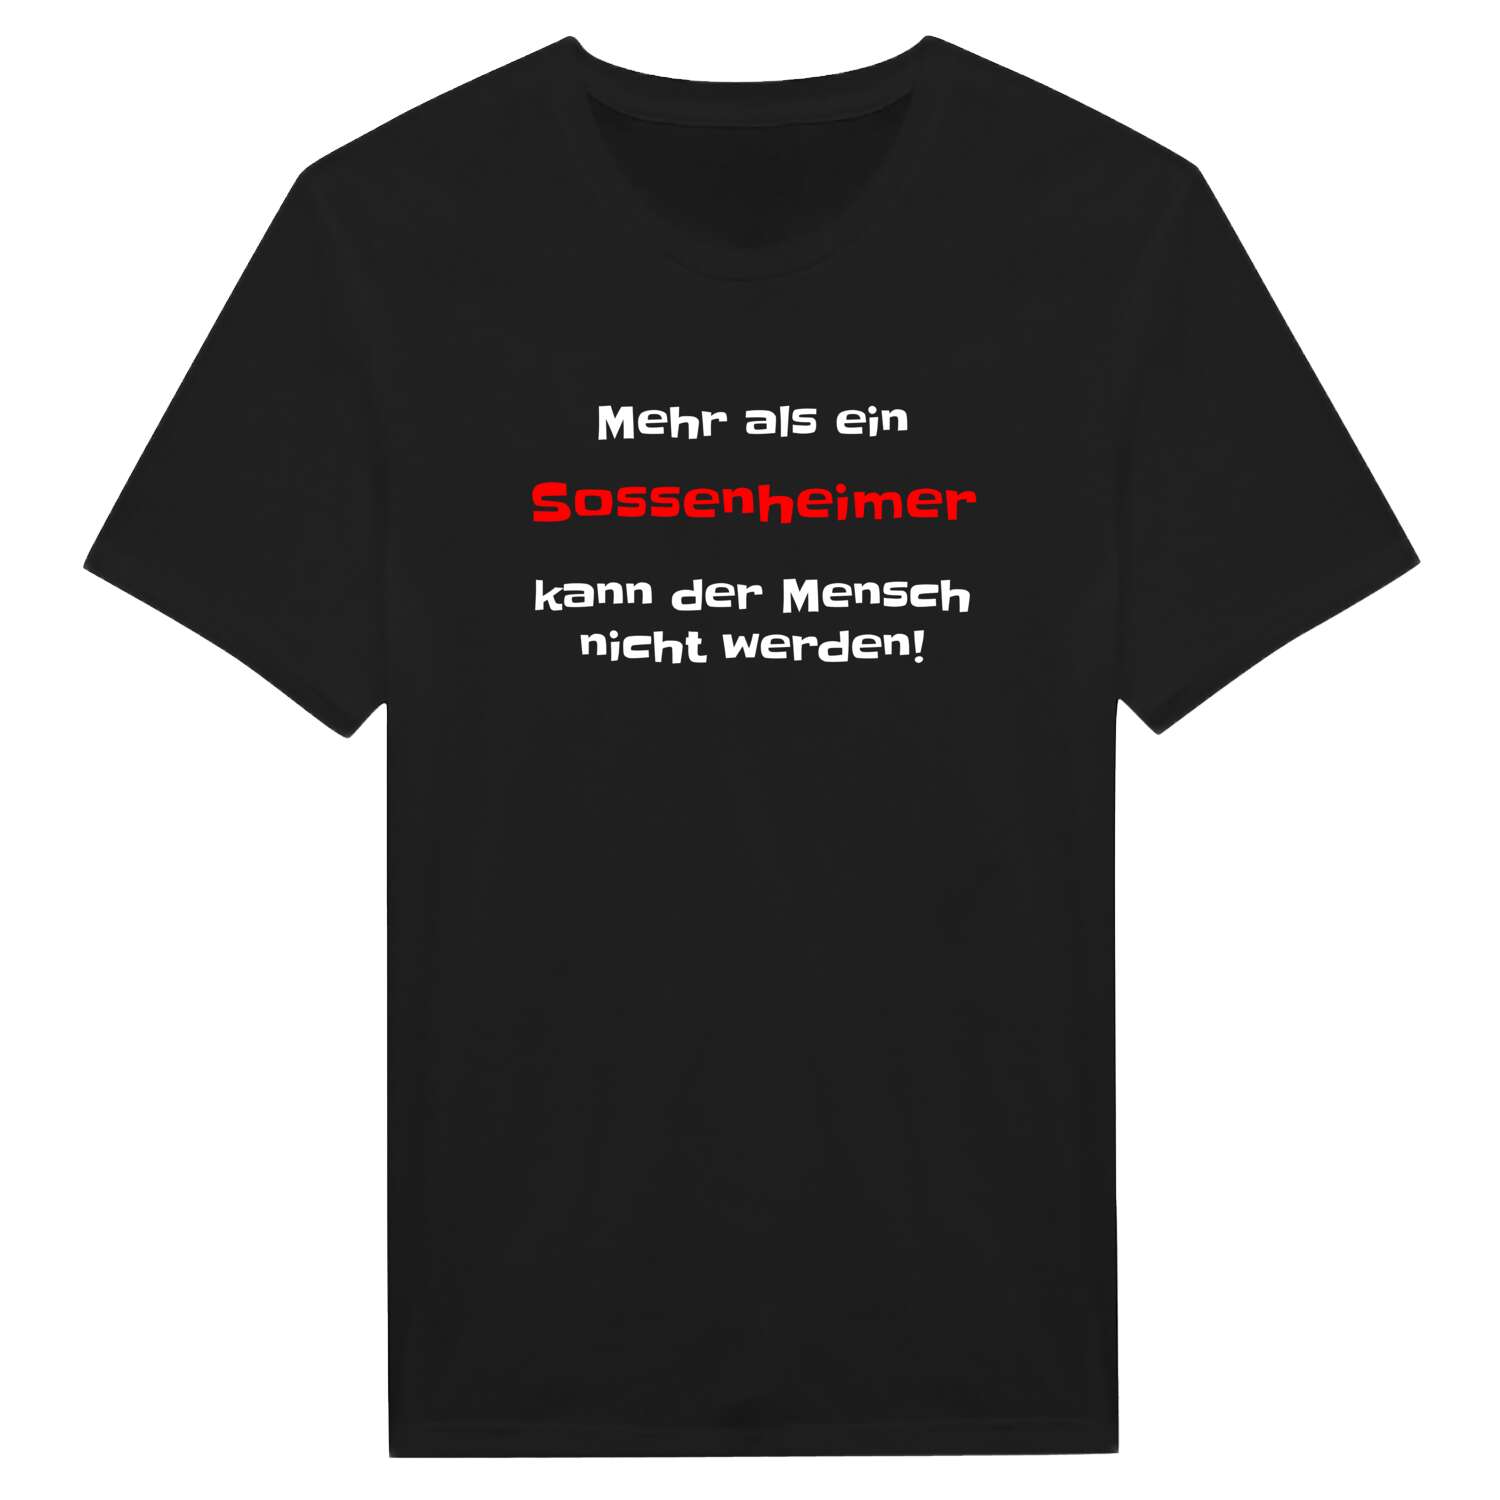 Sossenheim T-Shirt »Mehr als ein«